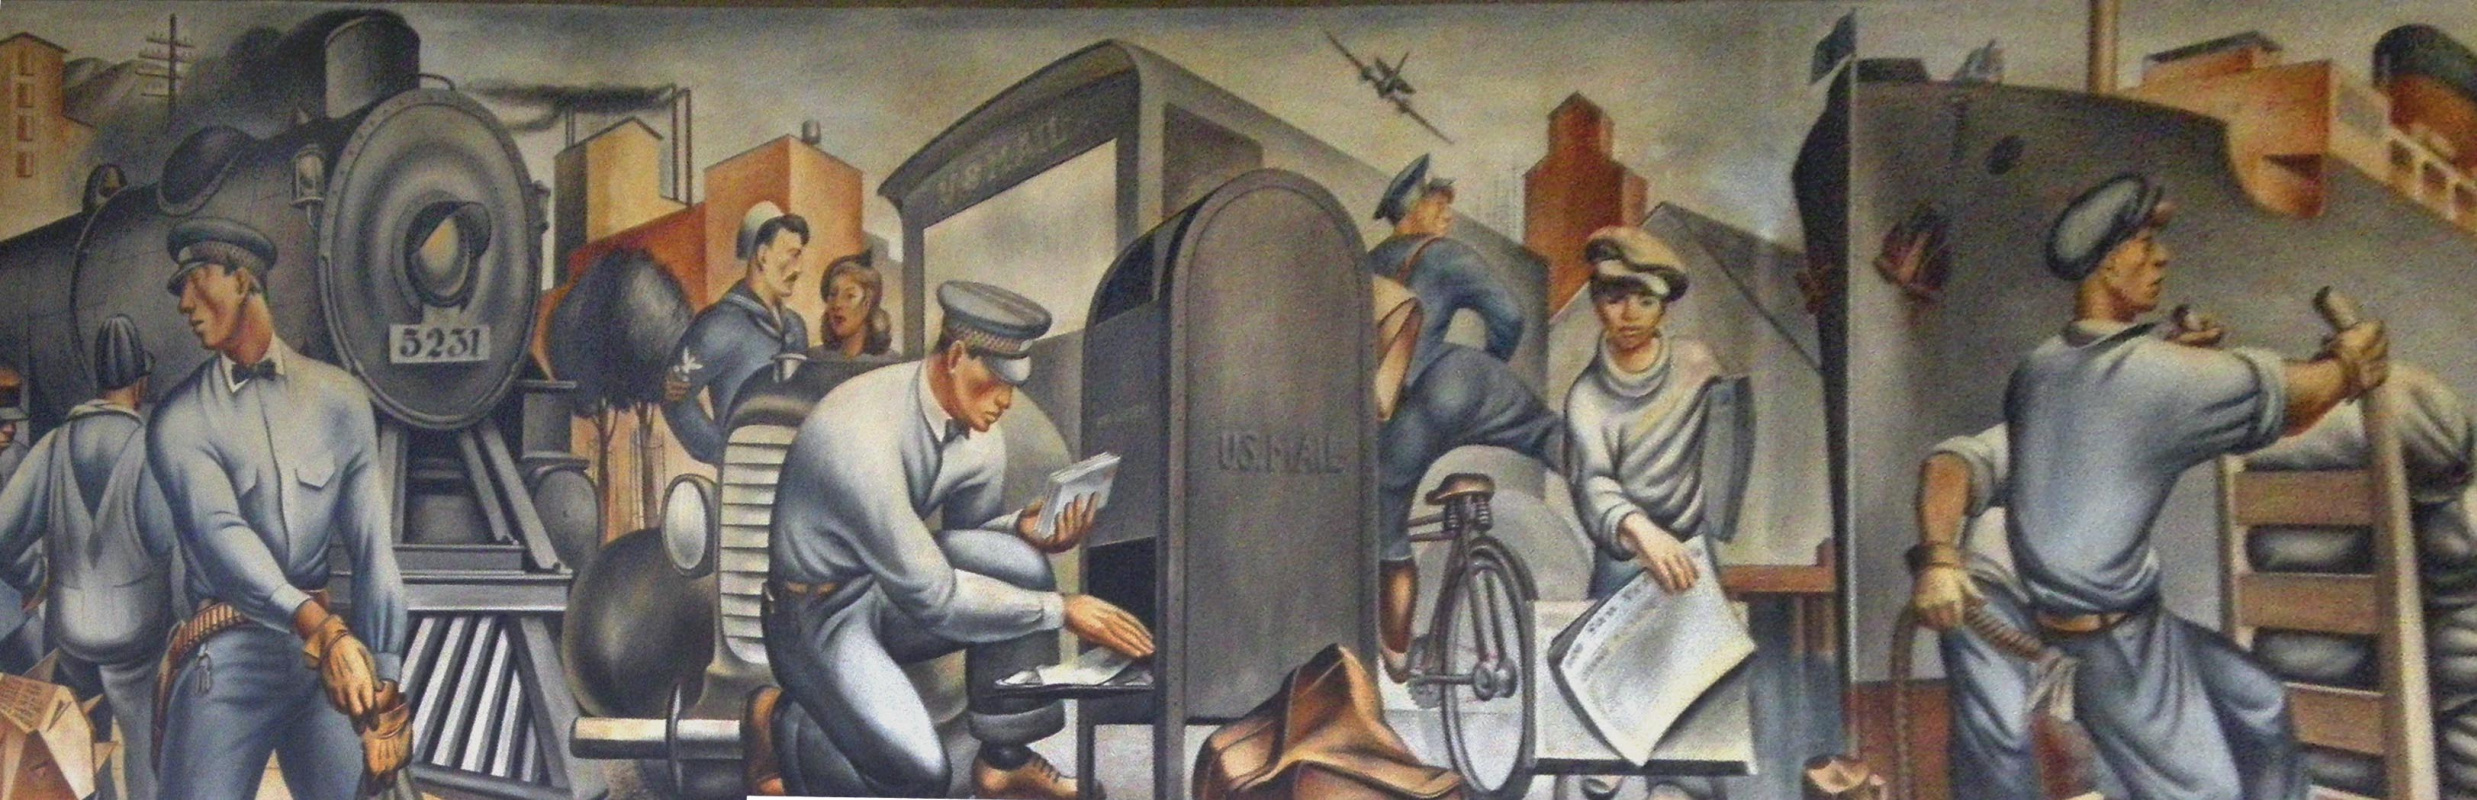 Флетчер Мартин, фреска «Перевозка почты» (1938) в почтовом отделении Сан-Педро, Калифорния